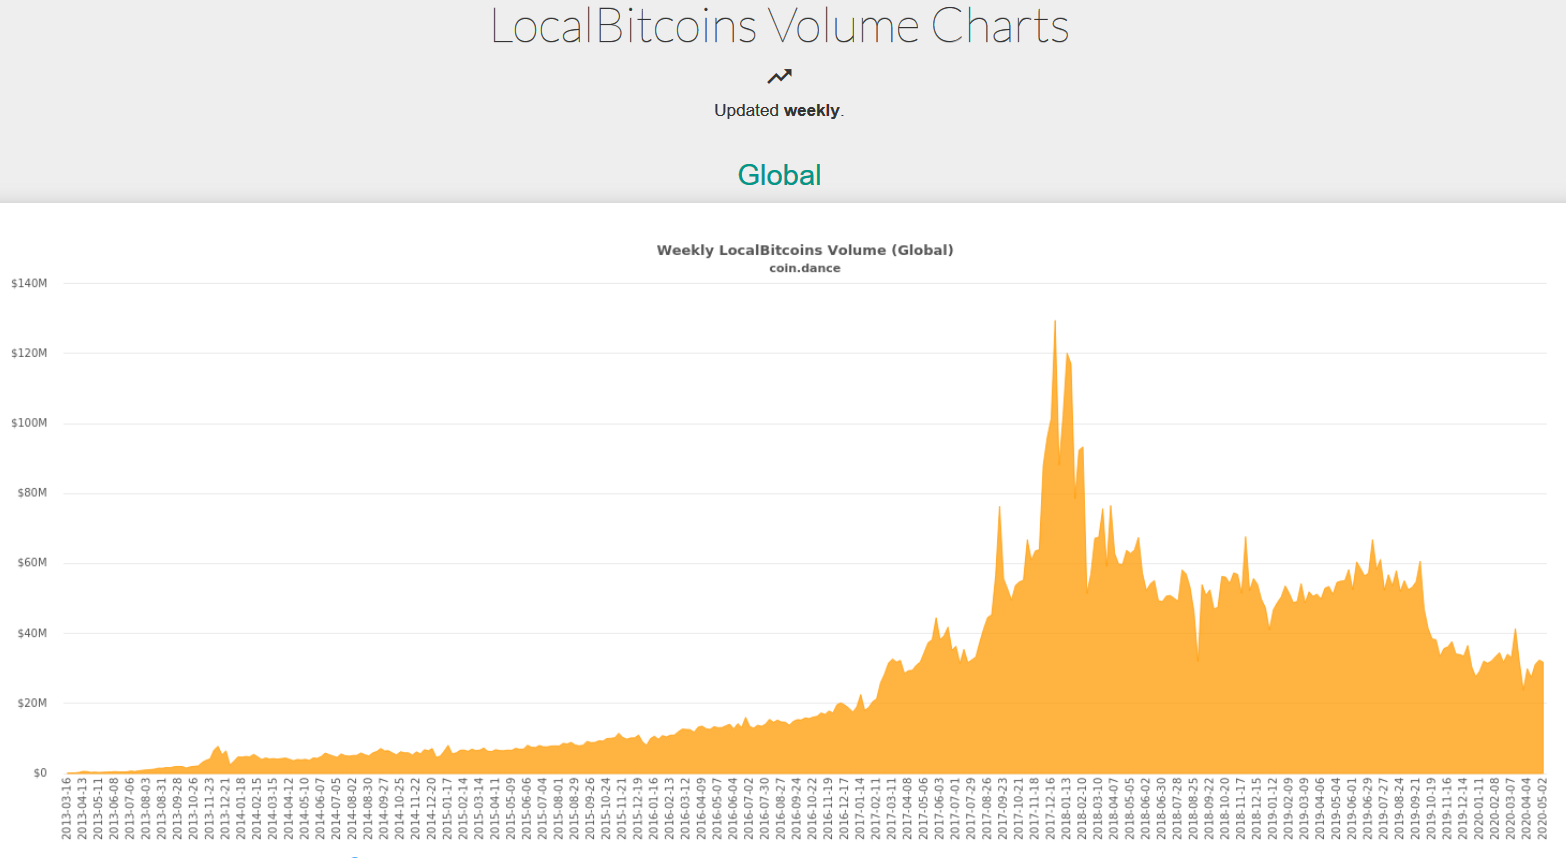 Trade volume including Bitcoin for LocalBitcoins